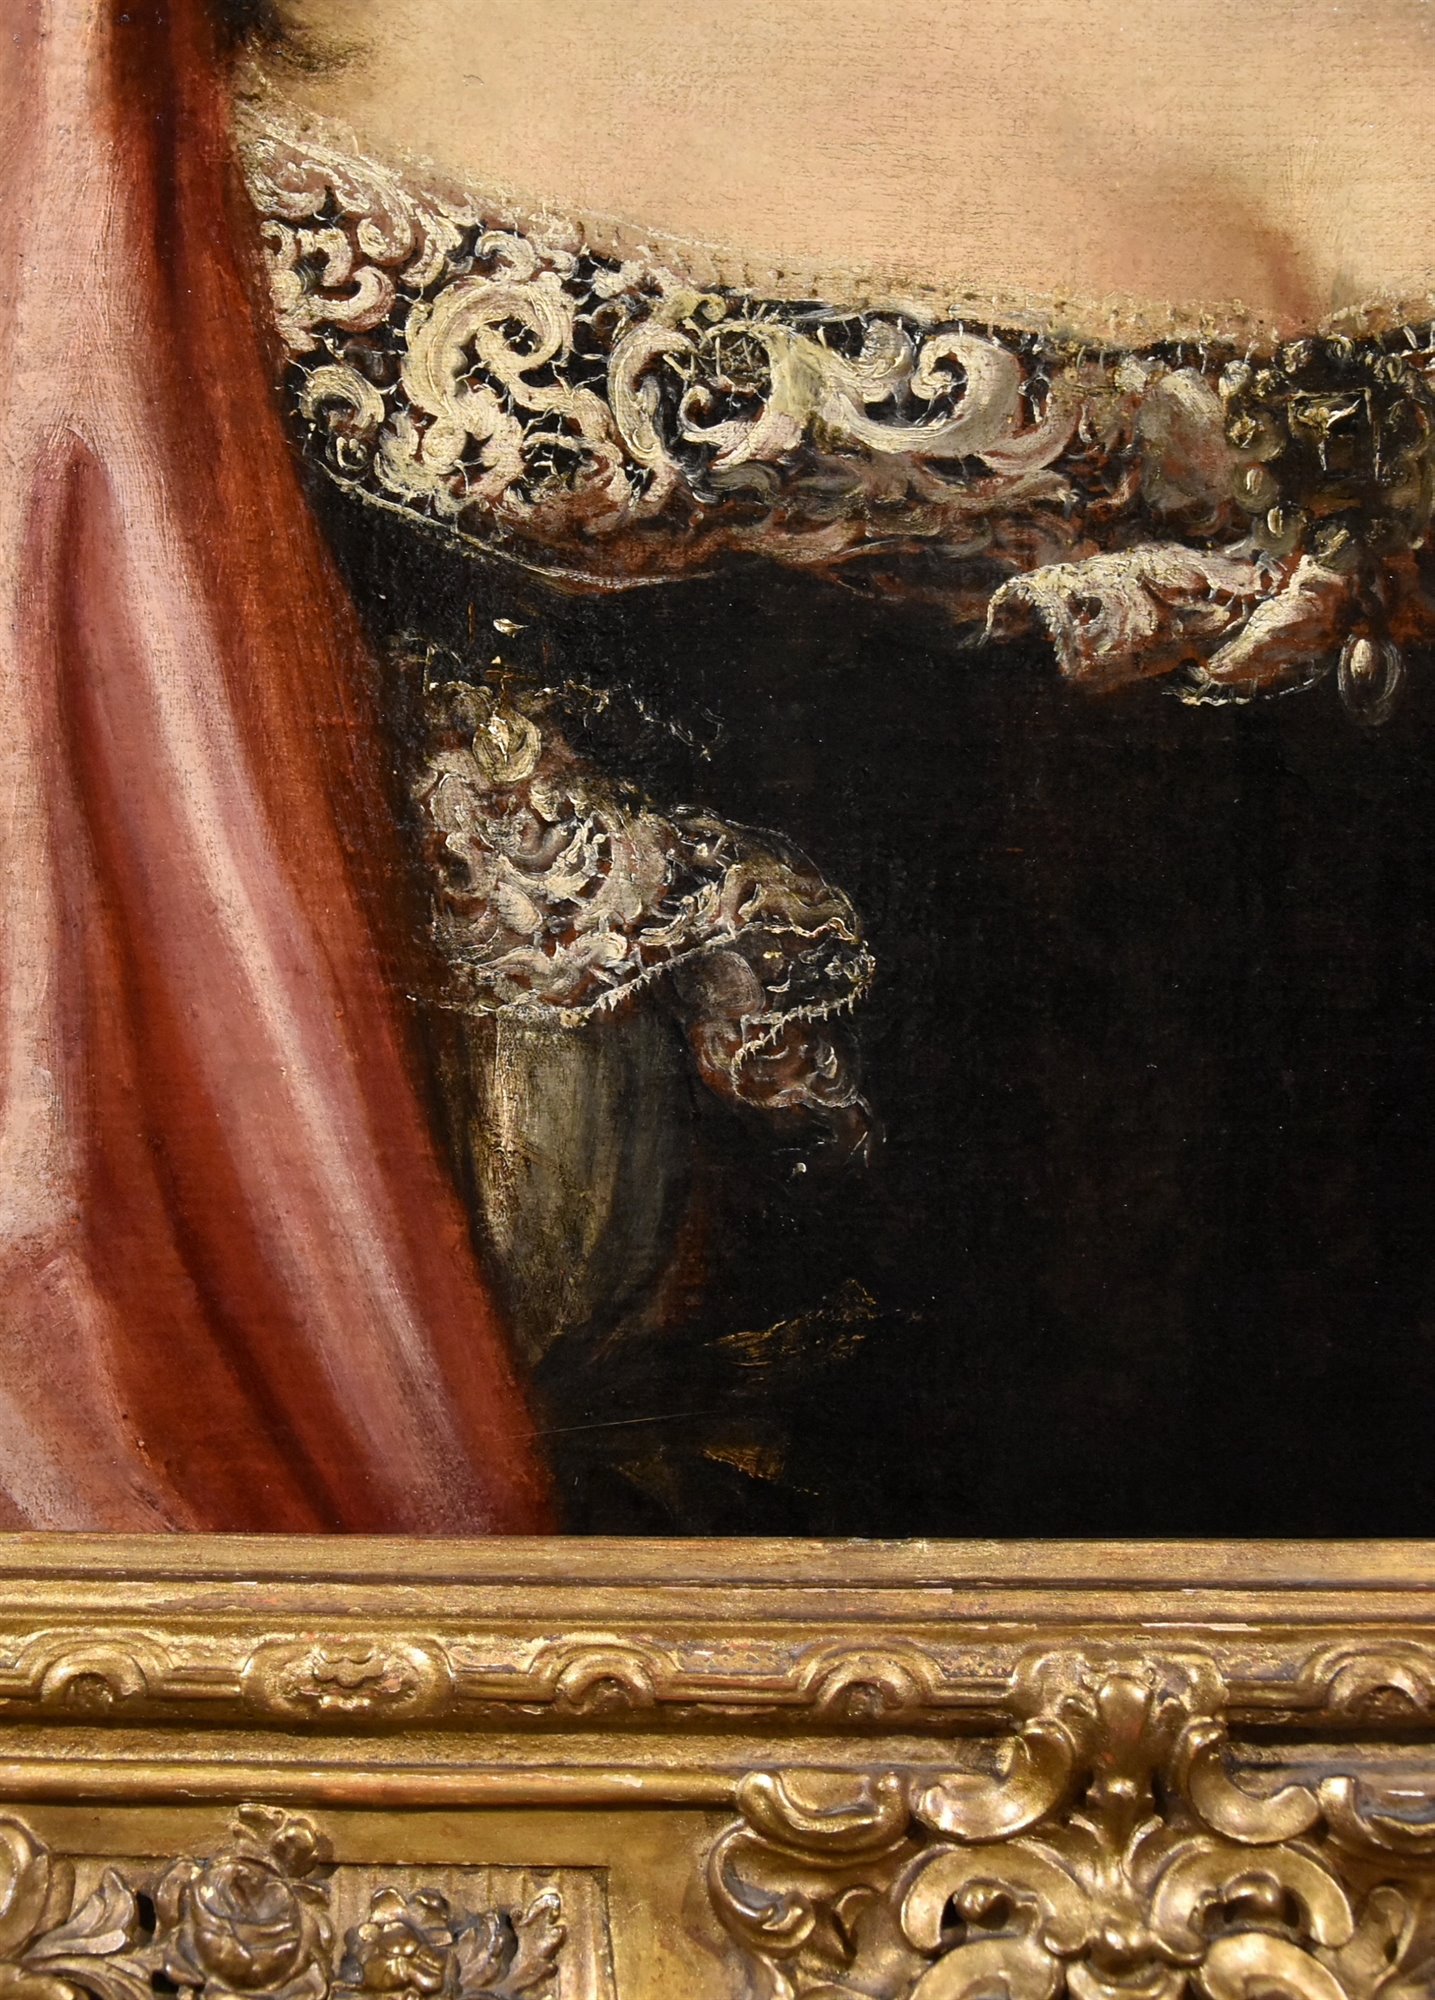 Ritratto di Ortensia Mancini, duchessa di Mazzarino (Roma 1646 – Chelsea 1699)